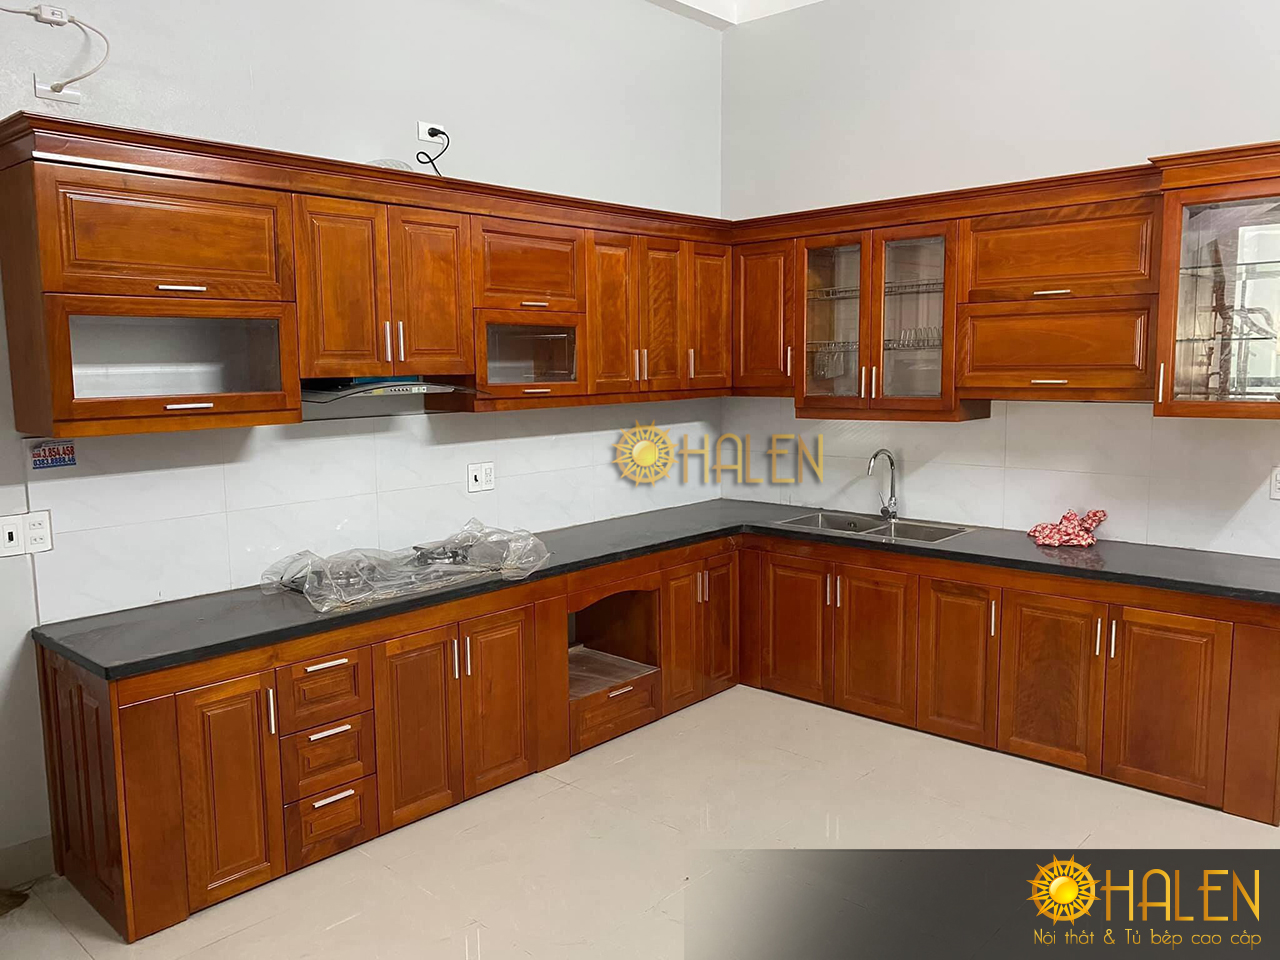 Tủ bếp xoan đào phun màu cánh gián ấm cúng cho không gian bếp